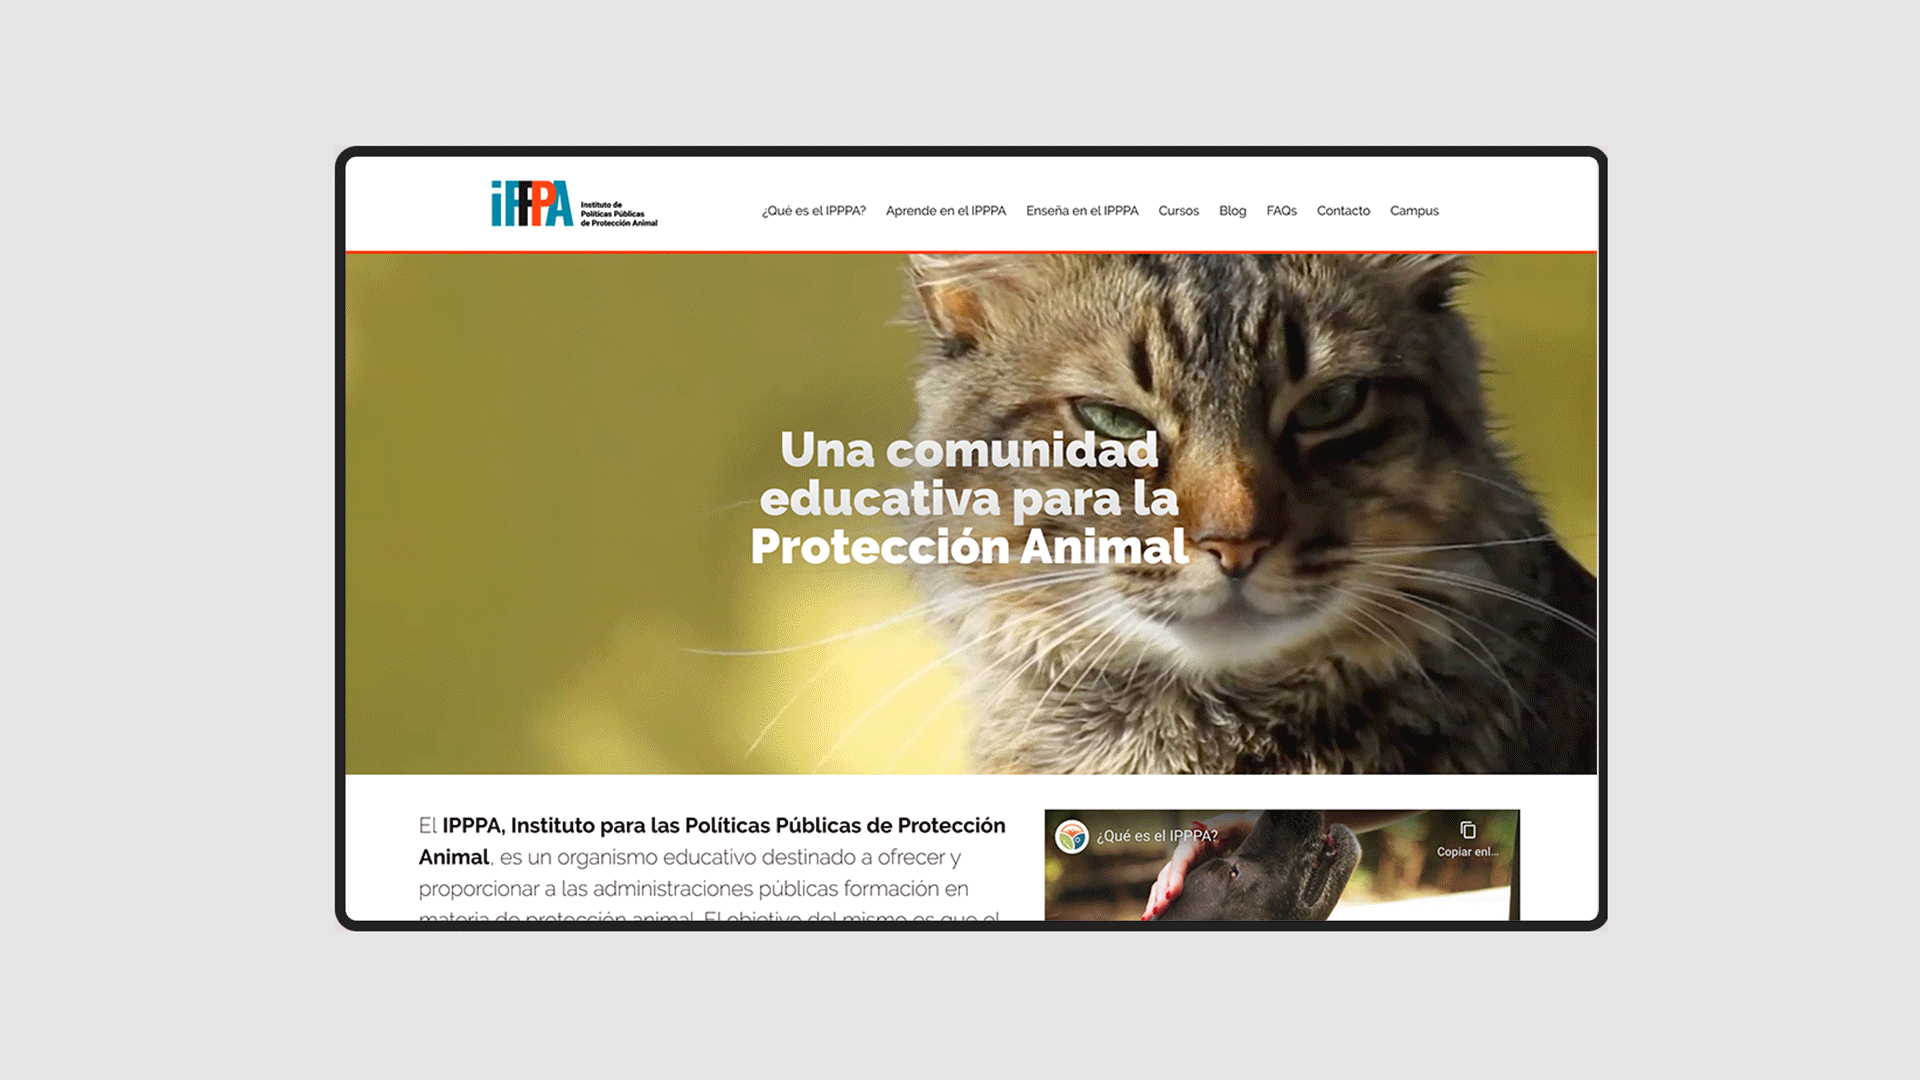 IPPPA – El Instituto de Políticas Públicas de Protección Animal